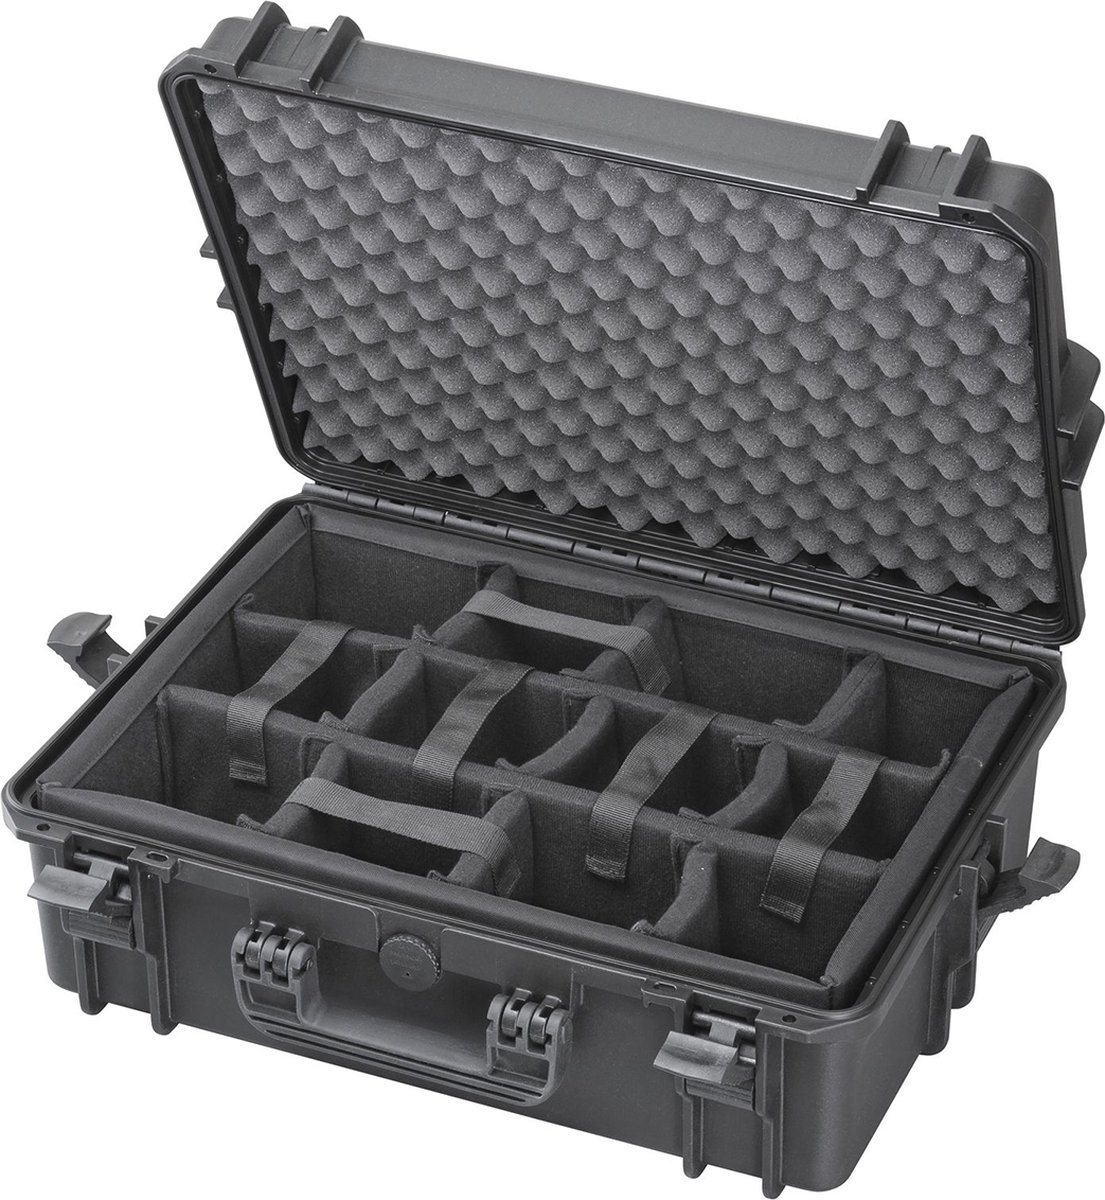 Gaffergear camera koffer 050 zwart trolley uitvoering met klittenband - 44,500000 x 25,800000 x 25,800000 cm (BxDxH)